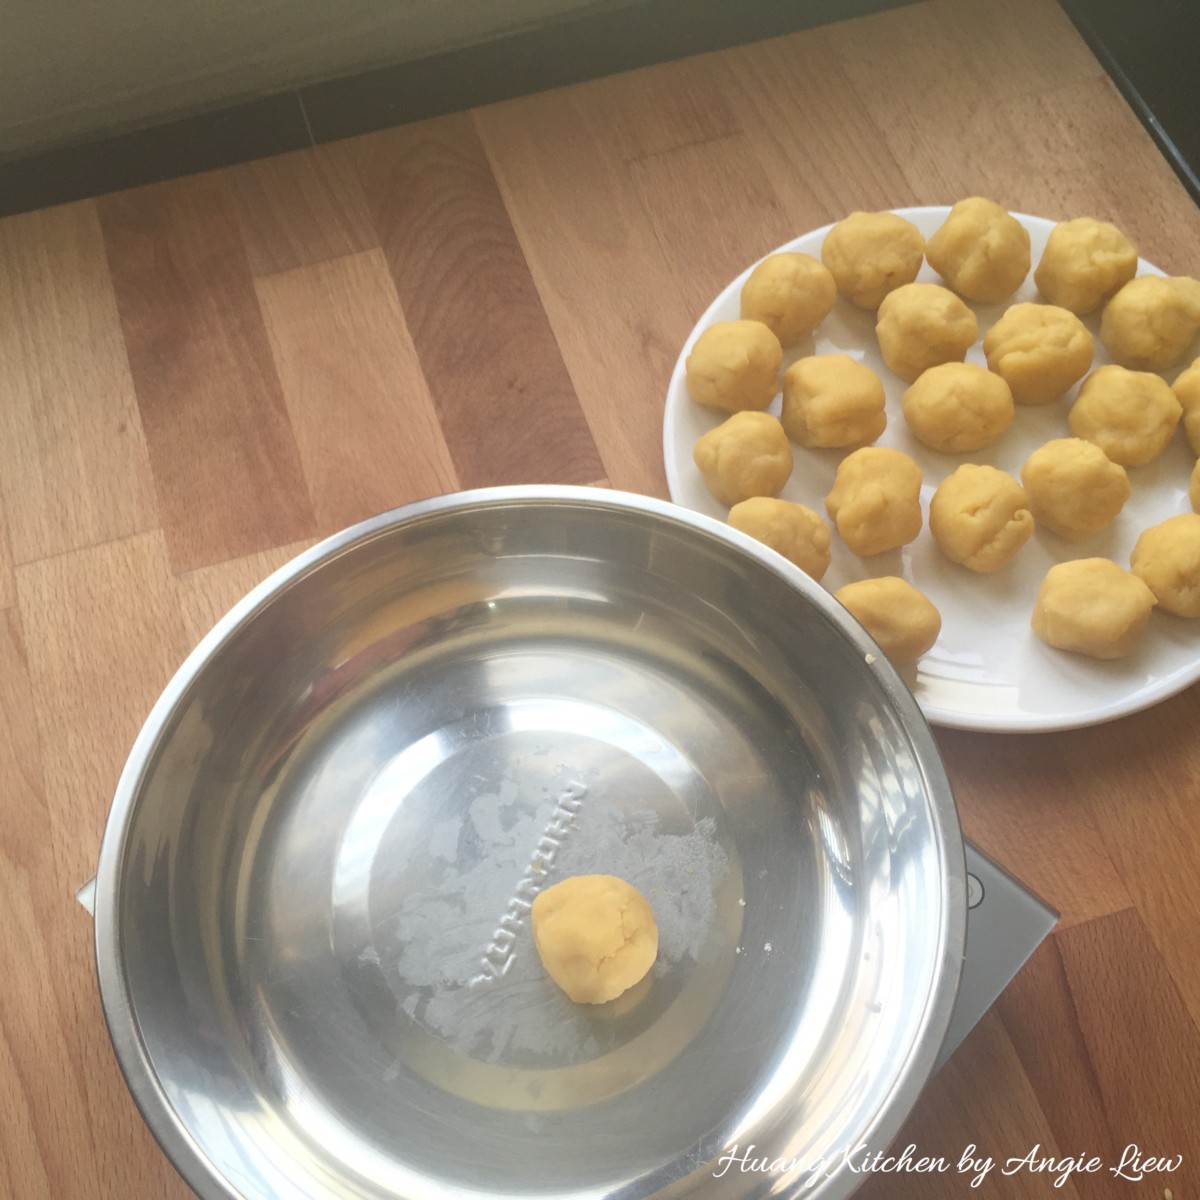 Spiral Curry Puffs recipe - divide oil dough